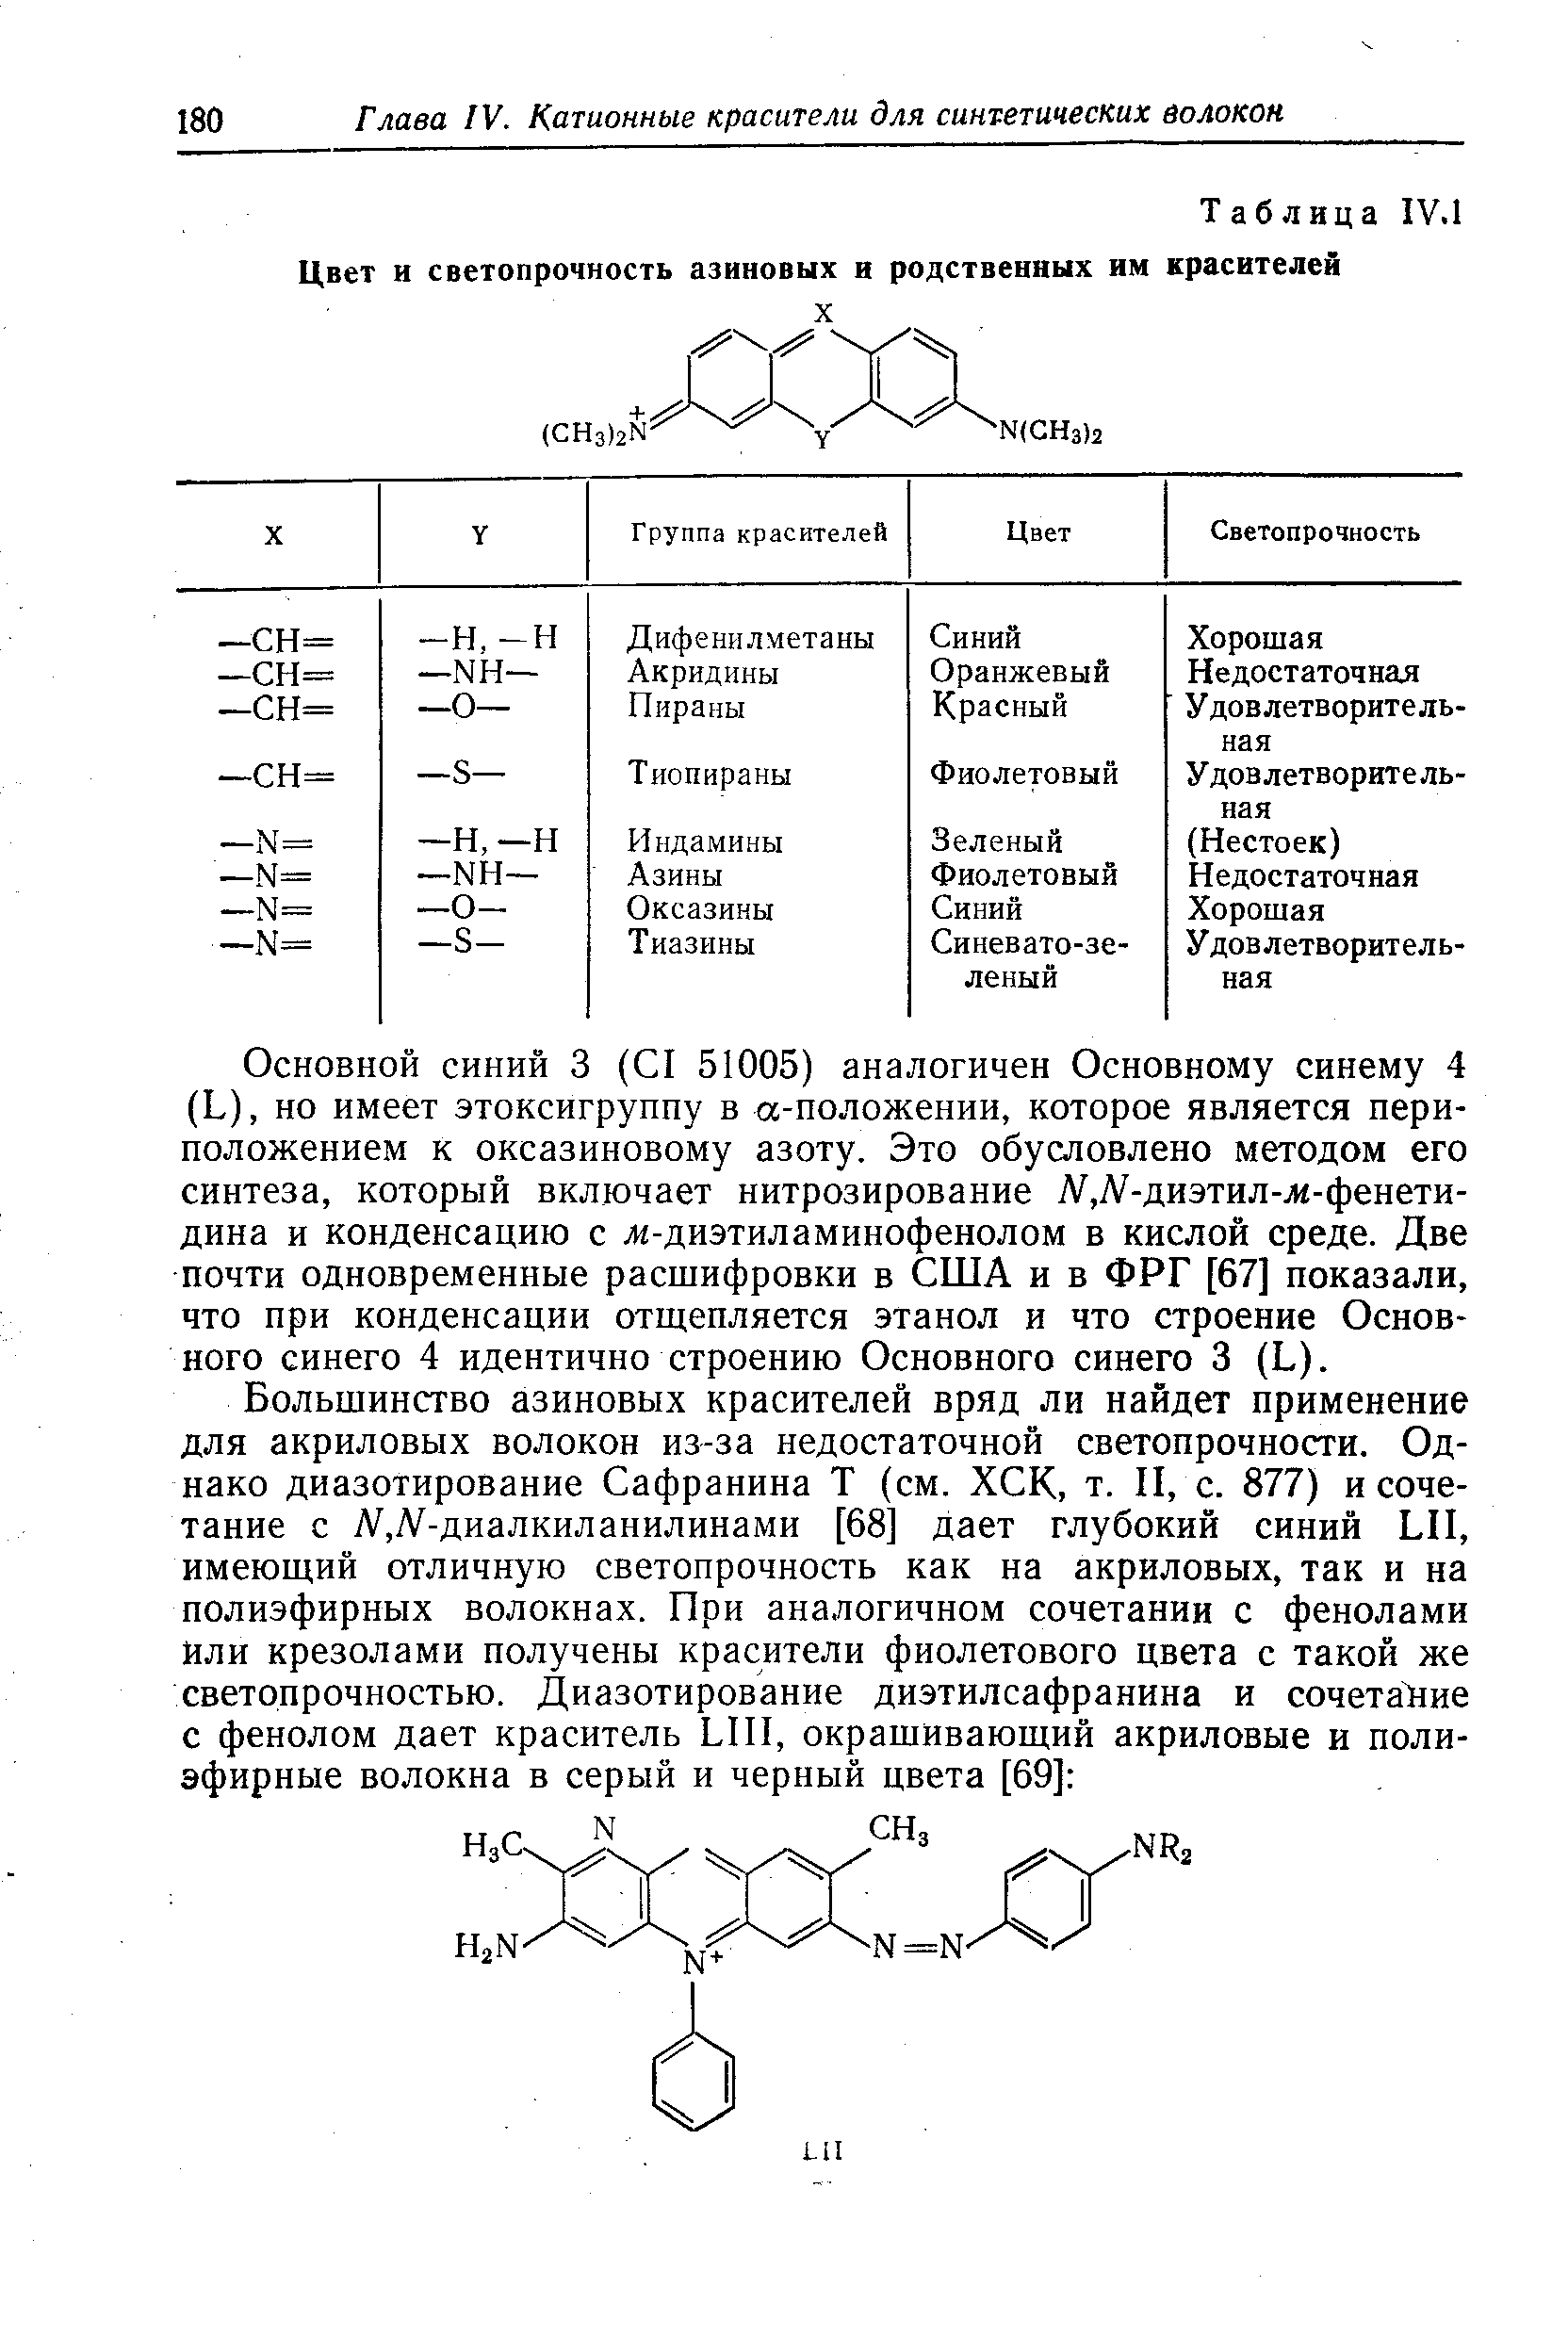 Основной синий 3 ( I 51005) аналогичен Основному синему 4 (L), но имеет этоксигруппу в а-положении, которое является пери-положением к оксазиновому азоту. Это обусловлено методом его синтеза, который включает нитрозирование Л/ ,Л -диэтил-ж-фенети-дина и конденсацию с ж-диэтиламинофенолом в кислой среде. Две почти одновременные расшифровки в США и в ФРГ [67] показали, что при конденсации отщепляется этанол и что строение Основного синего 4 идентично строению Основного синего 3 (L).